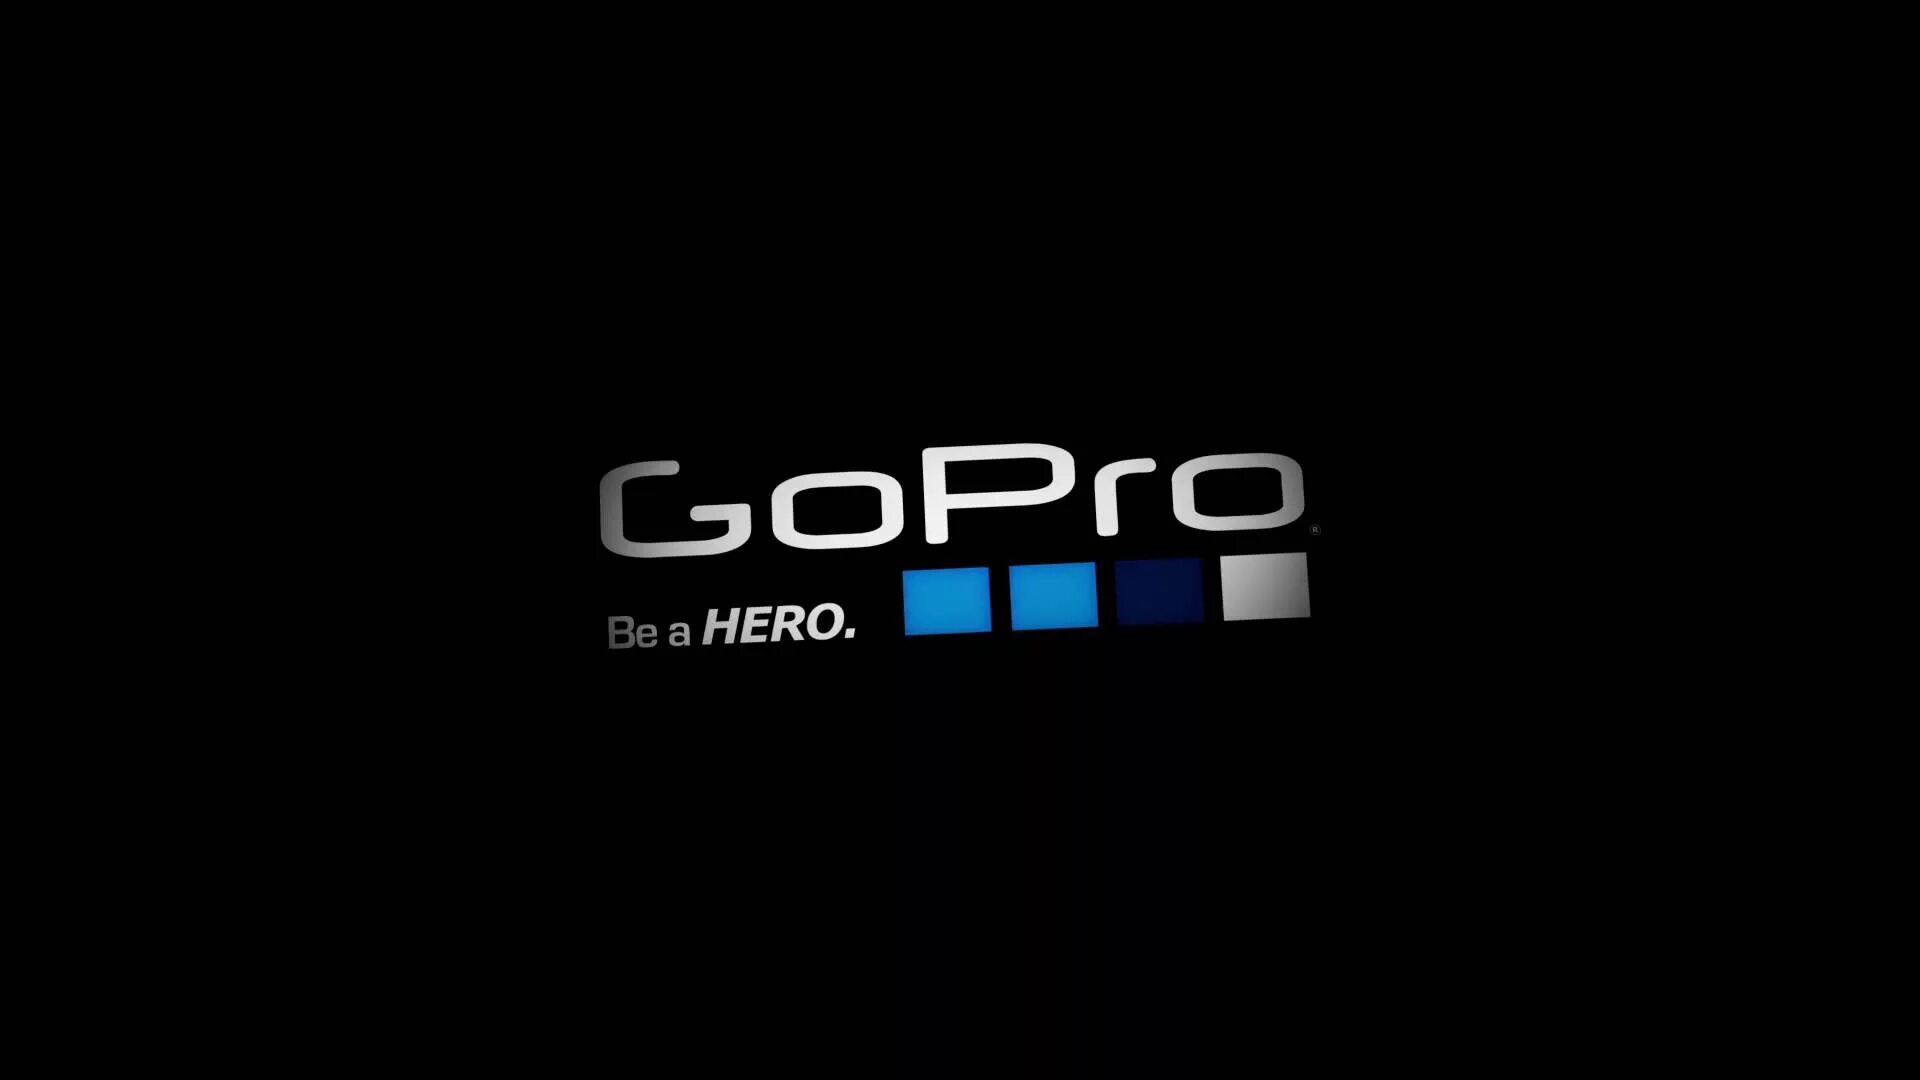 Сума го. Обои на рабочий стол go Pro. Логотип гопро. GOPRO заставка. GOPRO логотип на черном фоне.